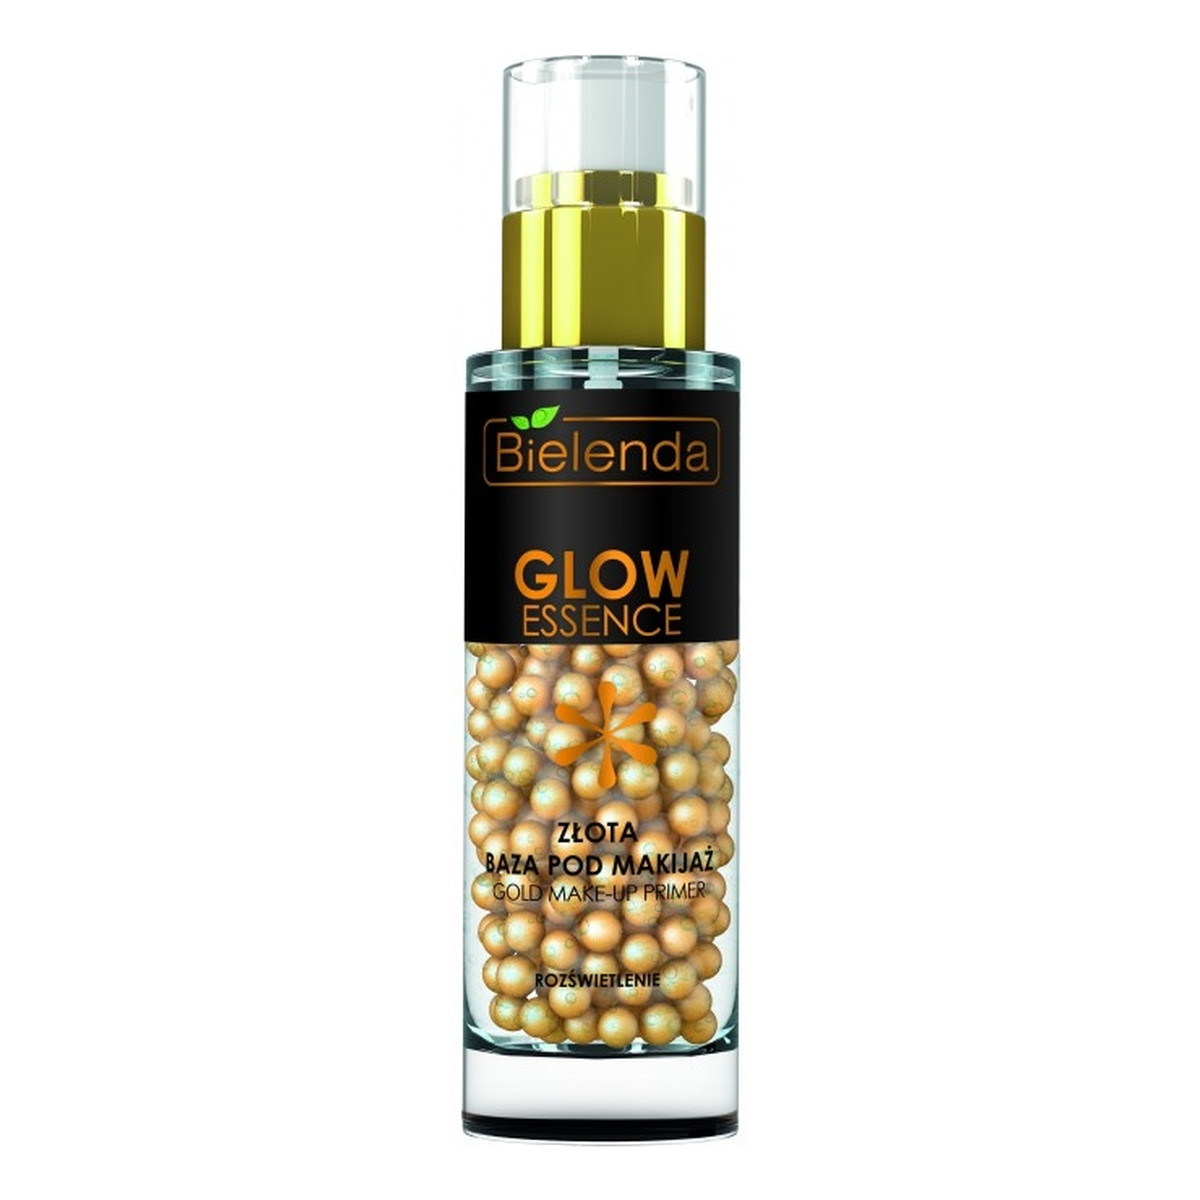 Bielenda Glow Essence Złota baza pod makijaż 30g